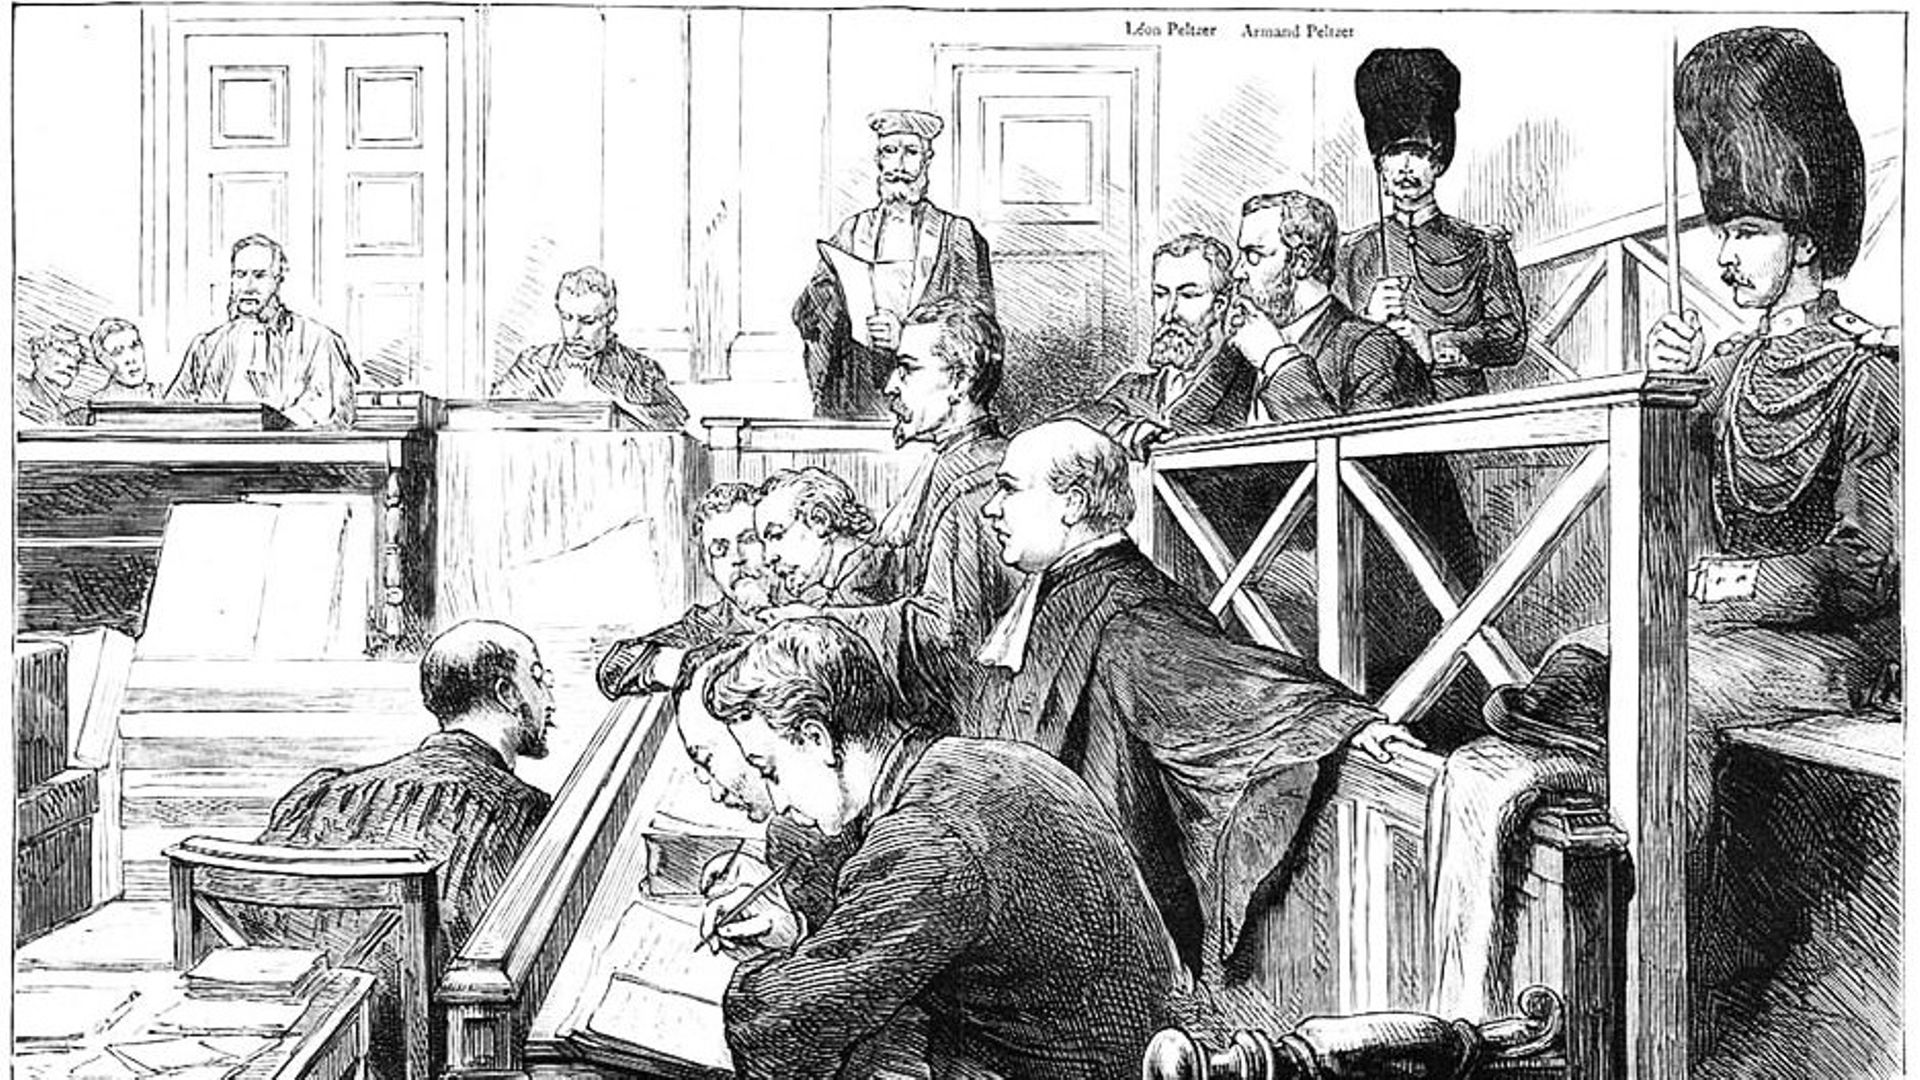 Le procès Peltzer dessiné dans le journal britannique "The Graphic"